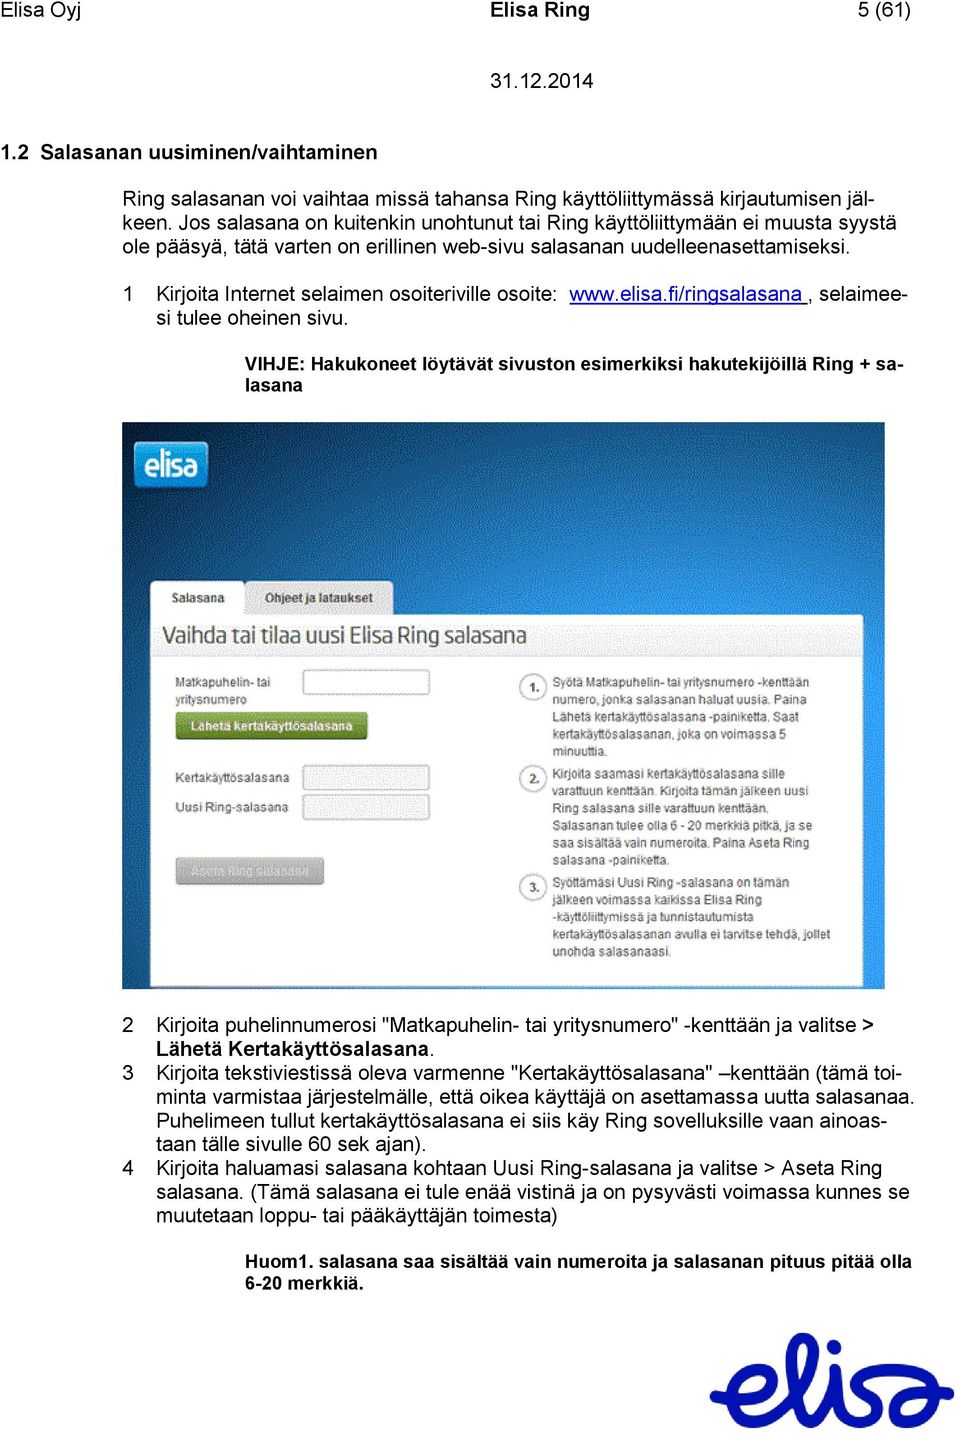 1 Kirjoita Internet selaimen osoiteriville osoite: www.elisa.fi/ringsalasana, selaimeesi tulee oheinen sivu.